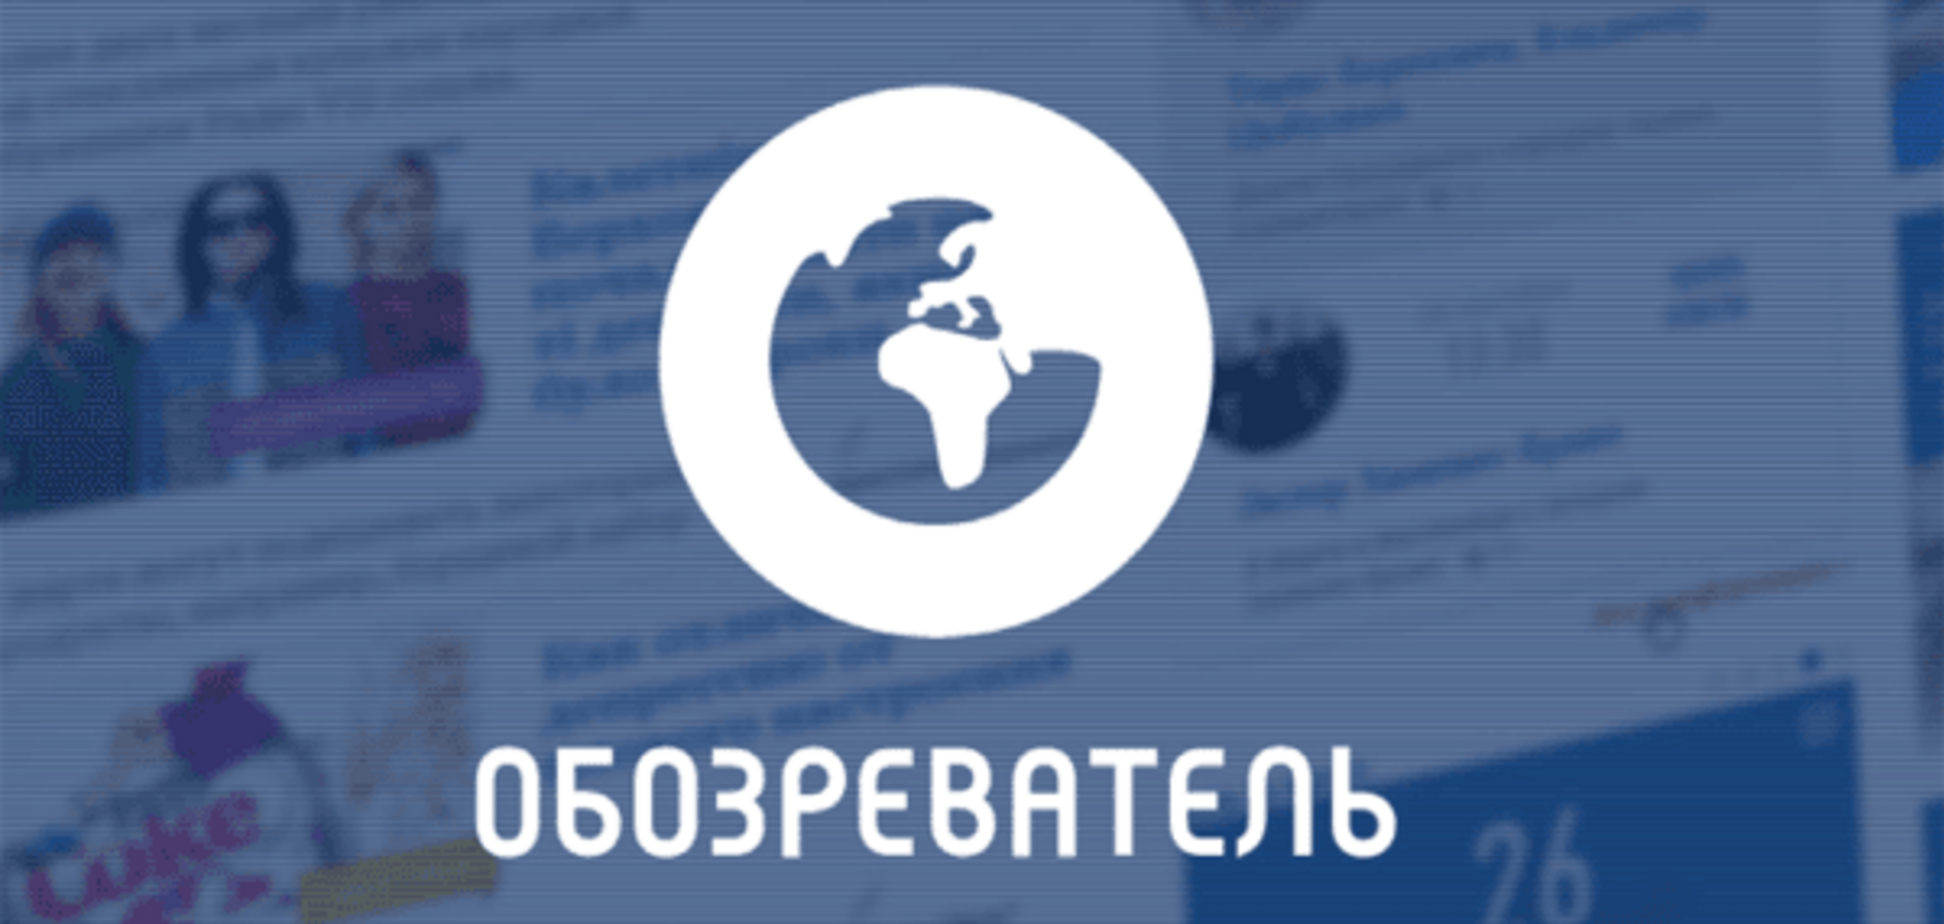 'Обозреватель' вошел в топ самых популярных сайтов в Украине